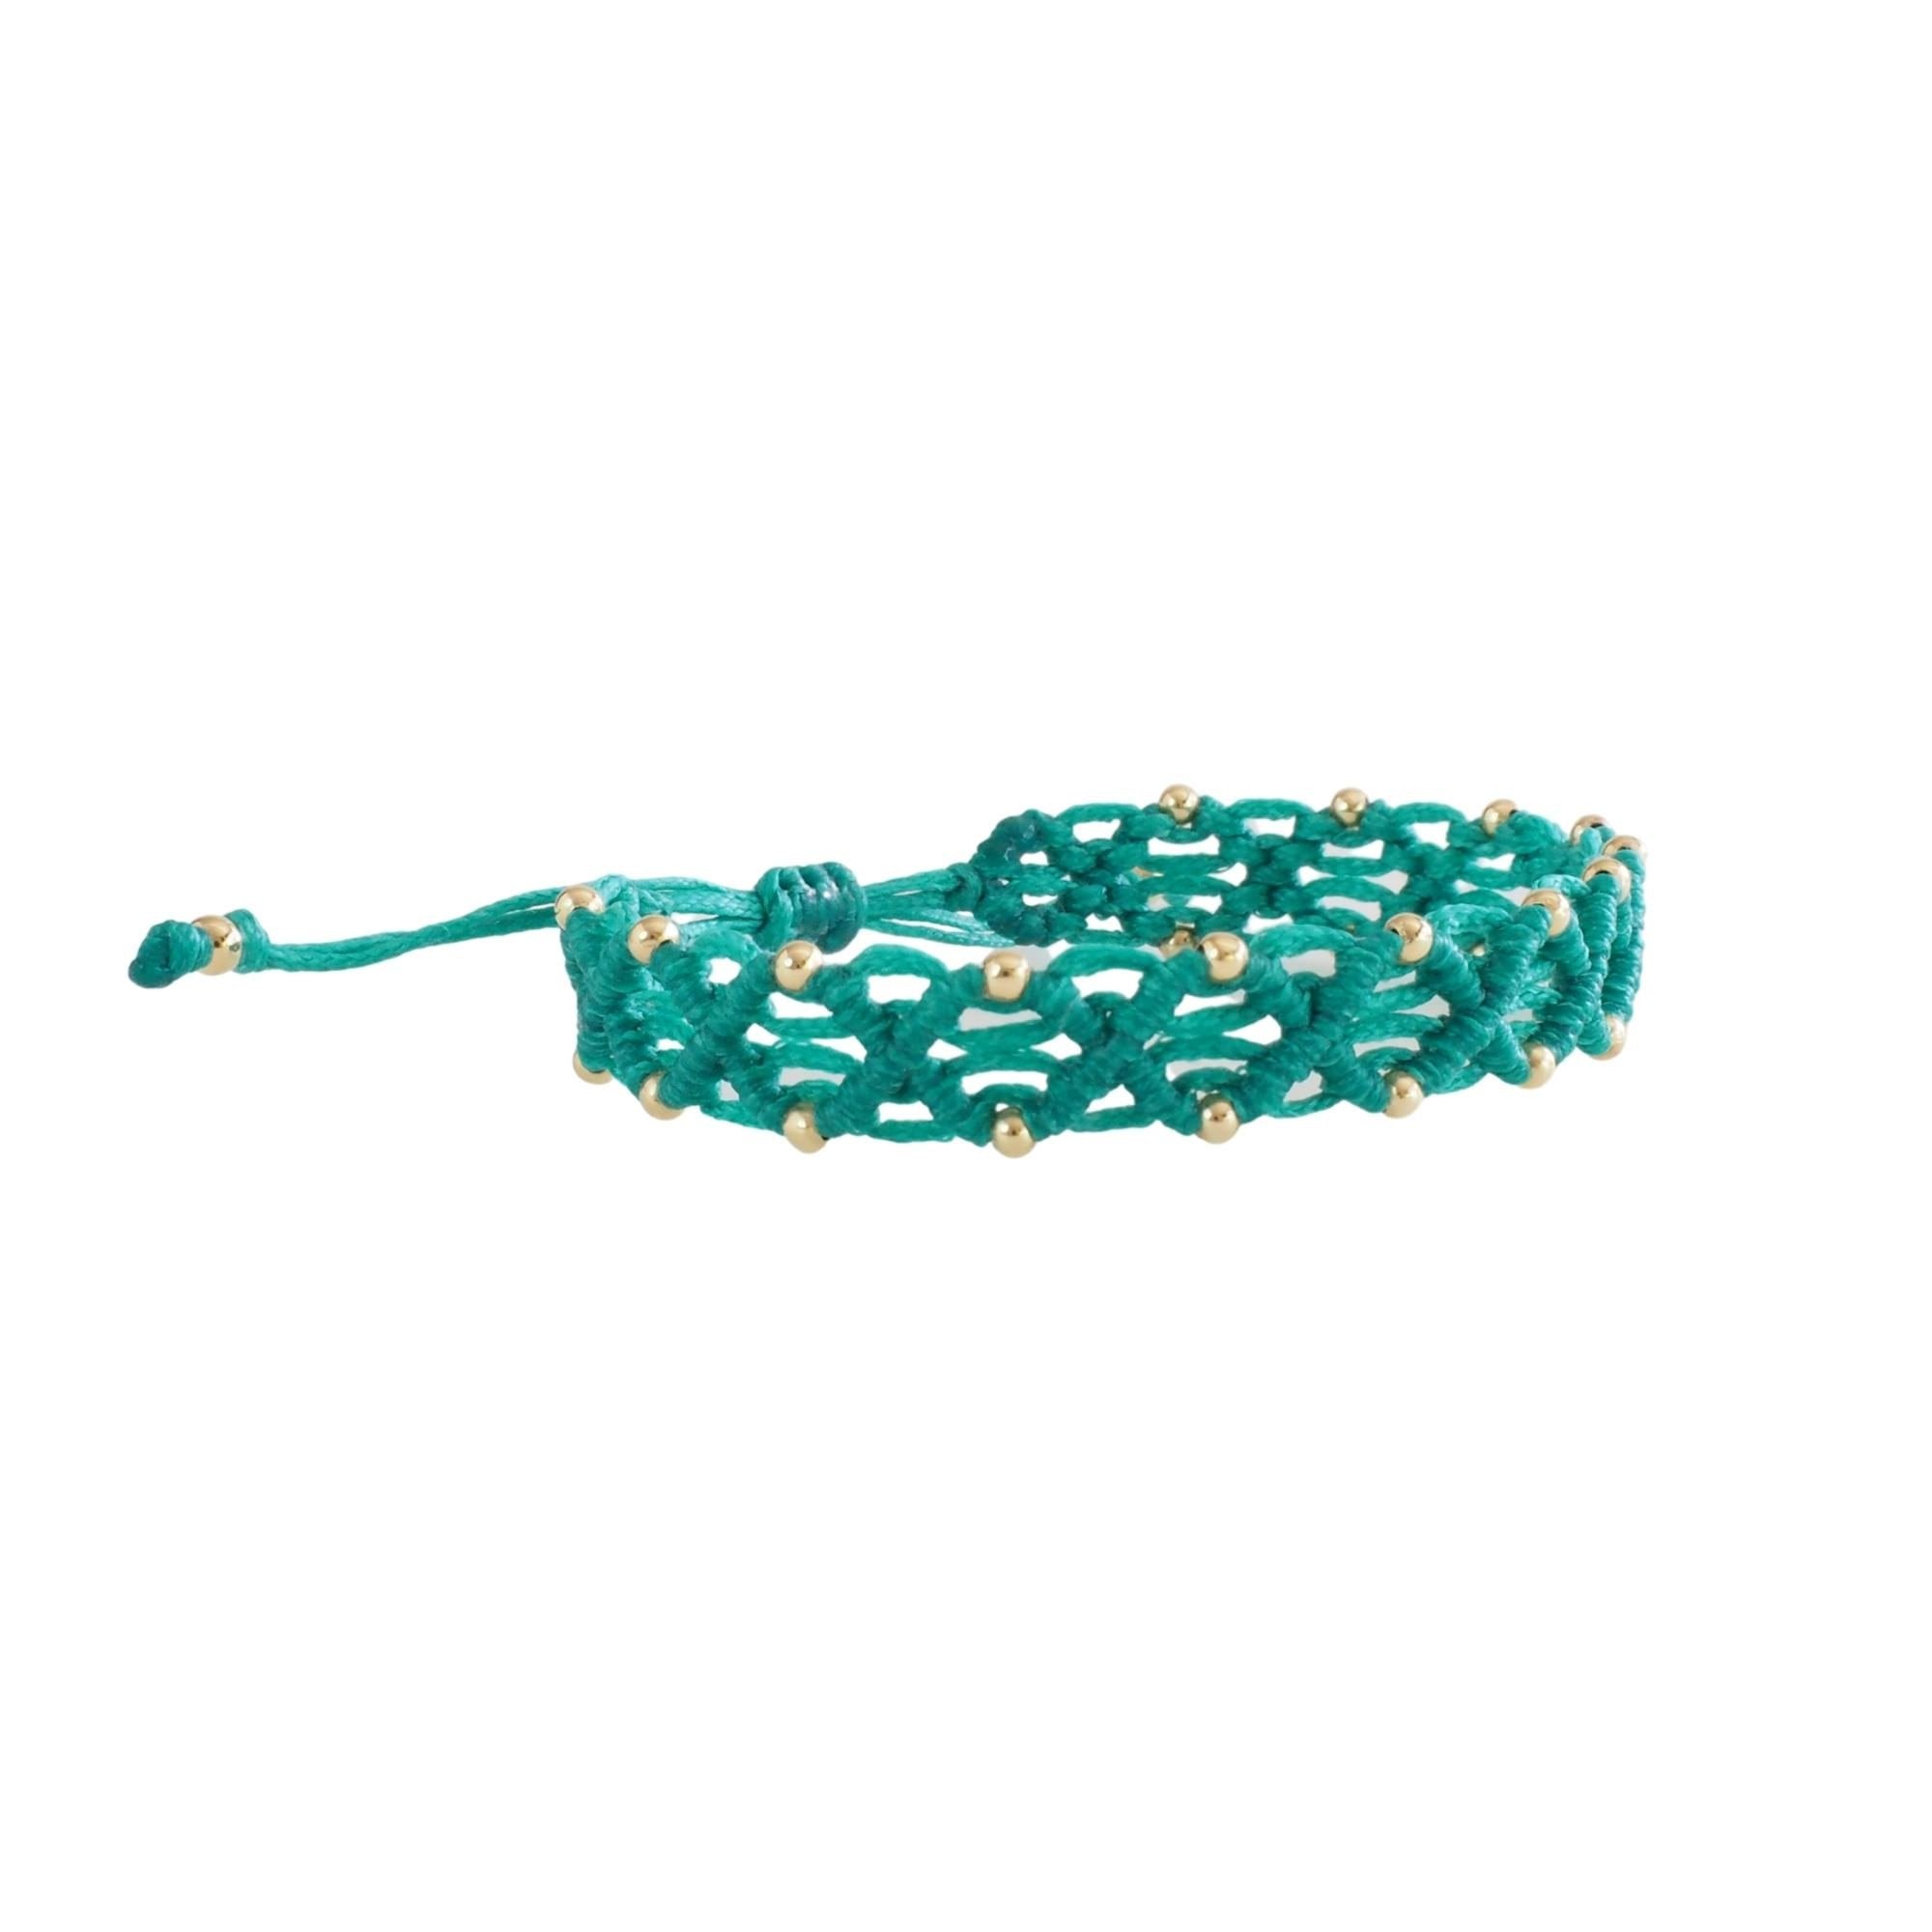 Rombos Macrame Bracelet - Gold Filled Beads -Aquamarine